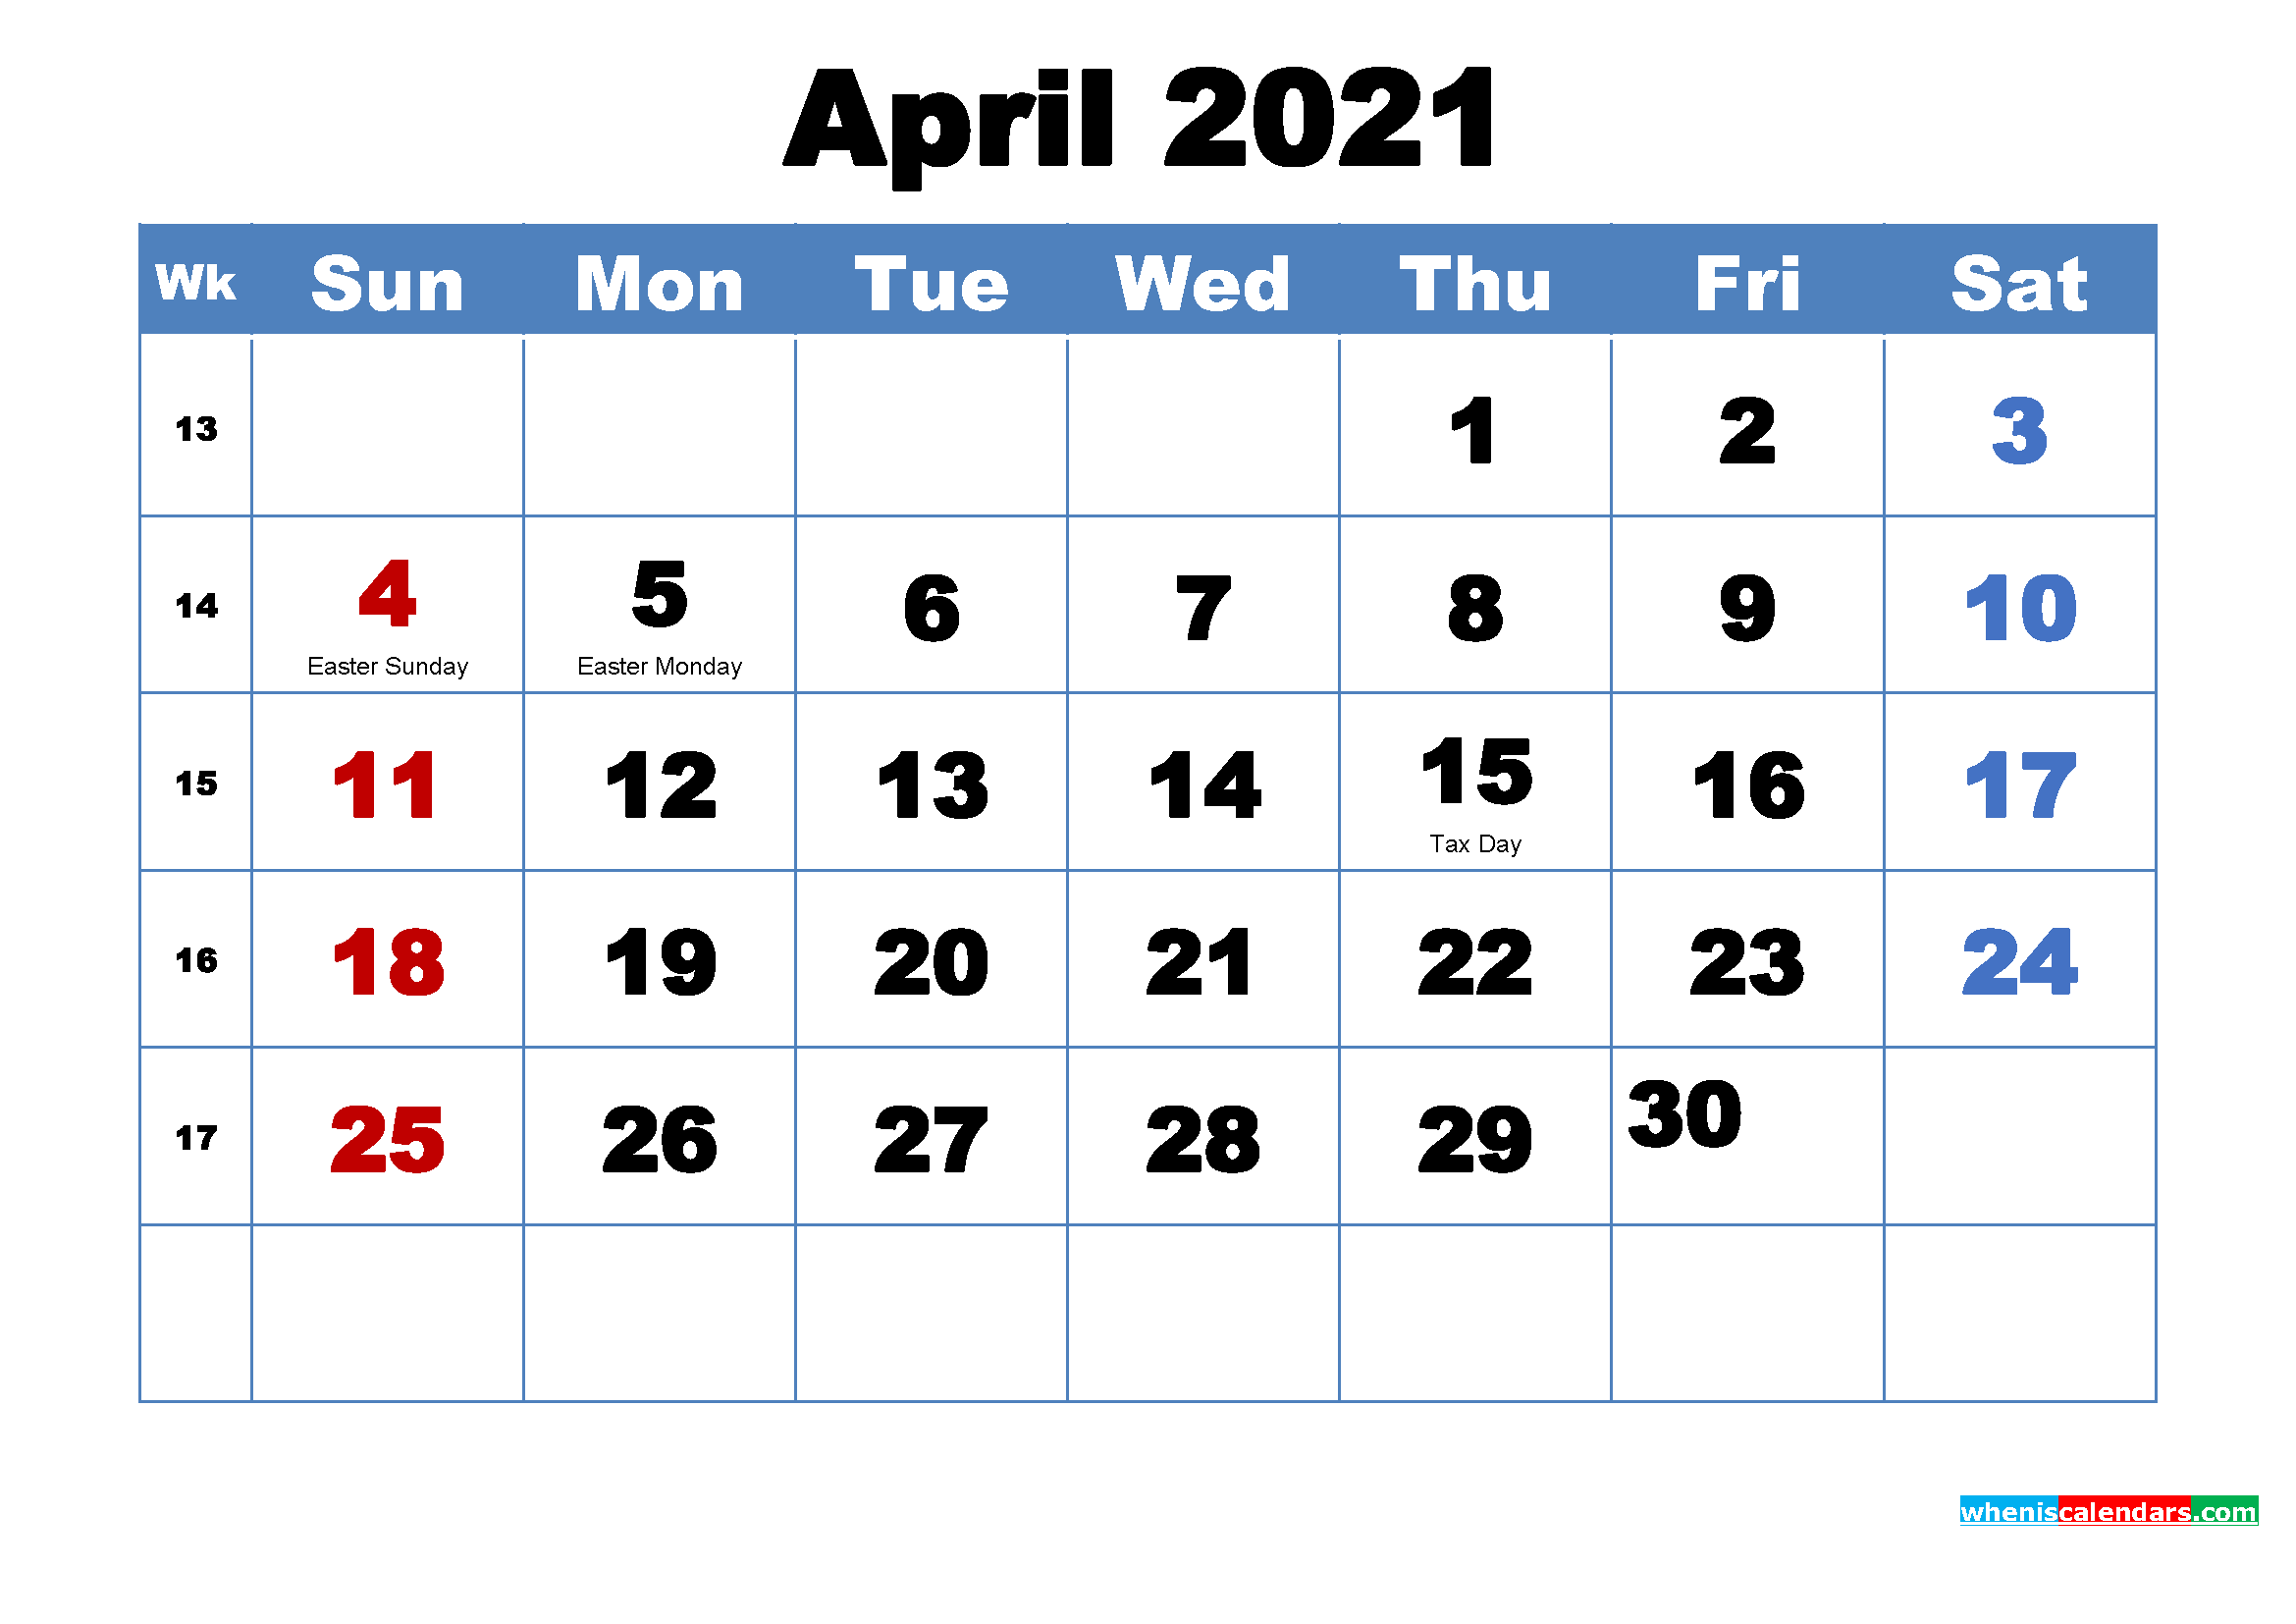 ¿Qué vacaciones son el 2 de abril de 2021?